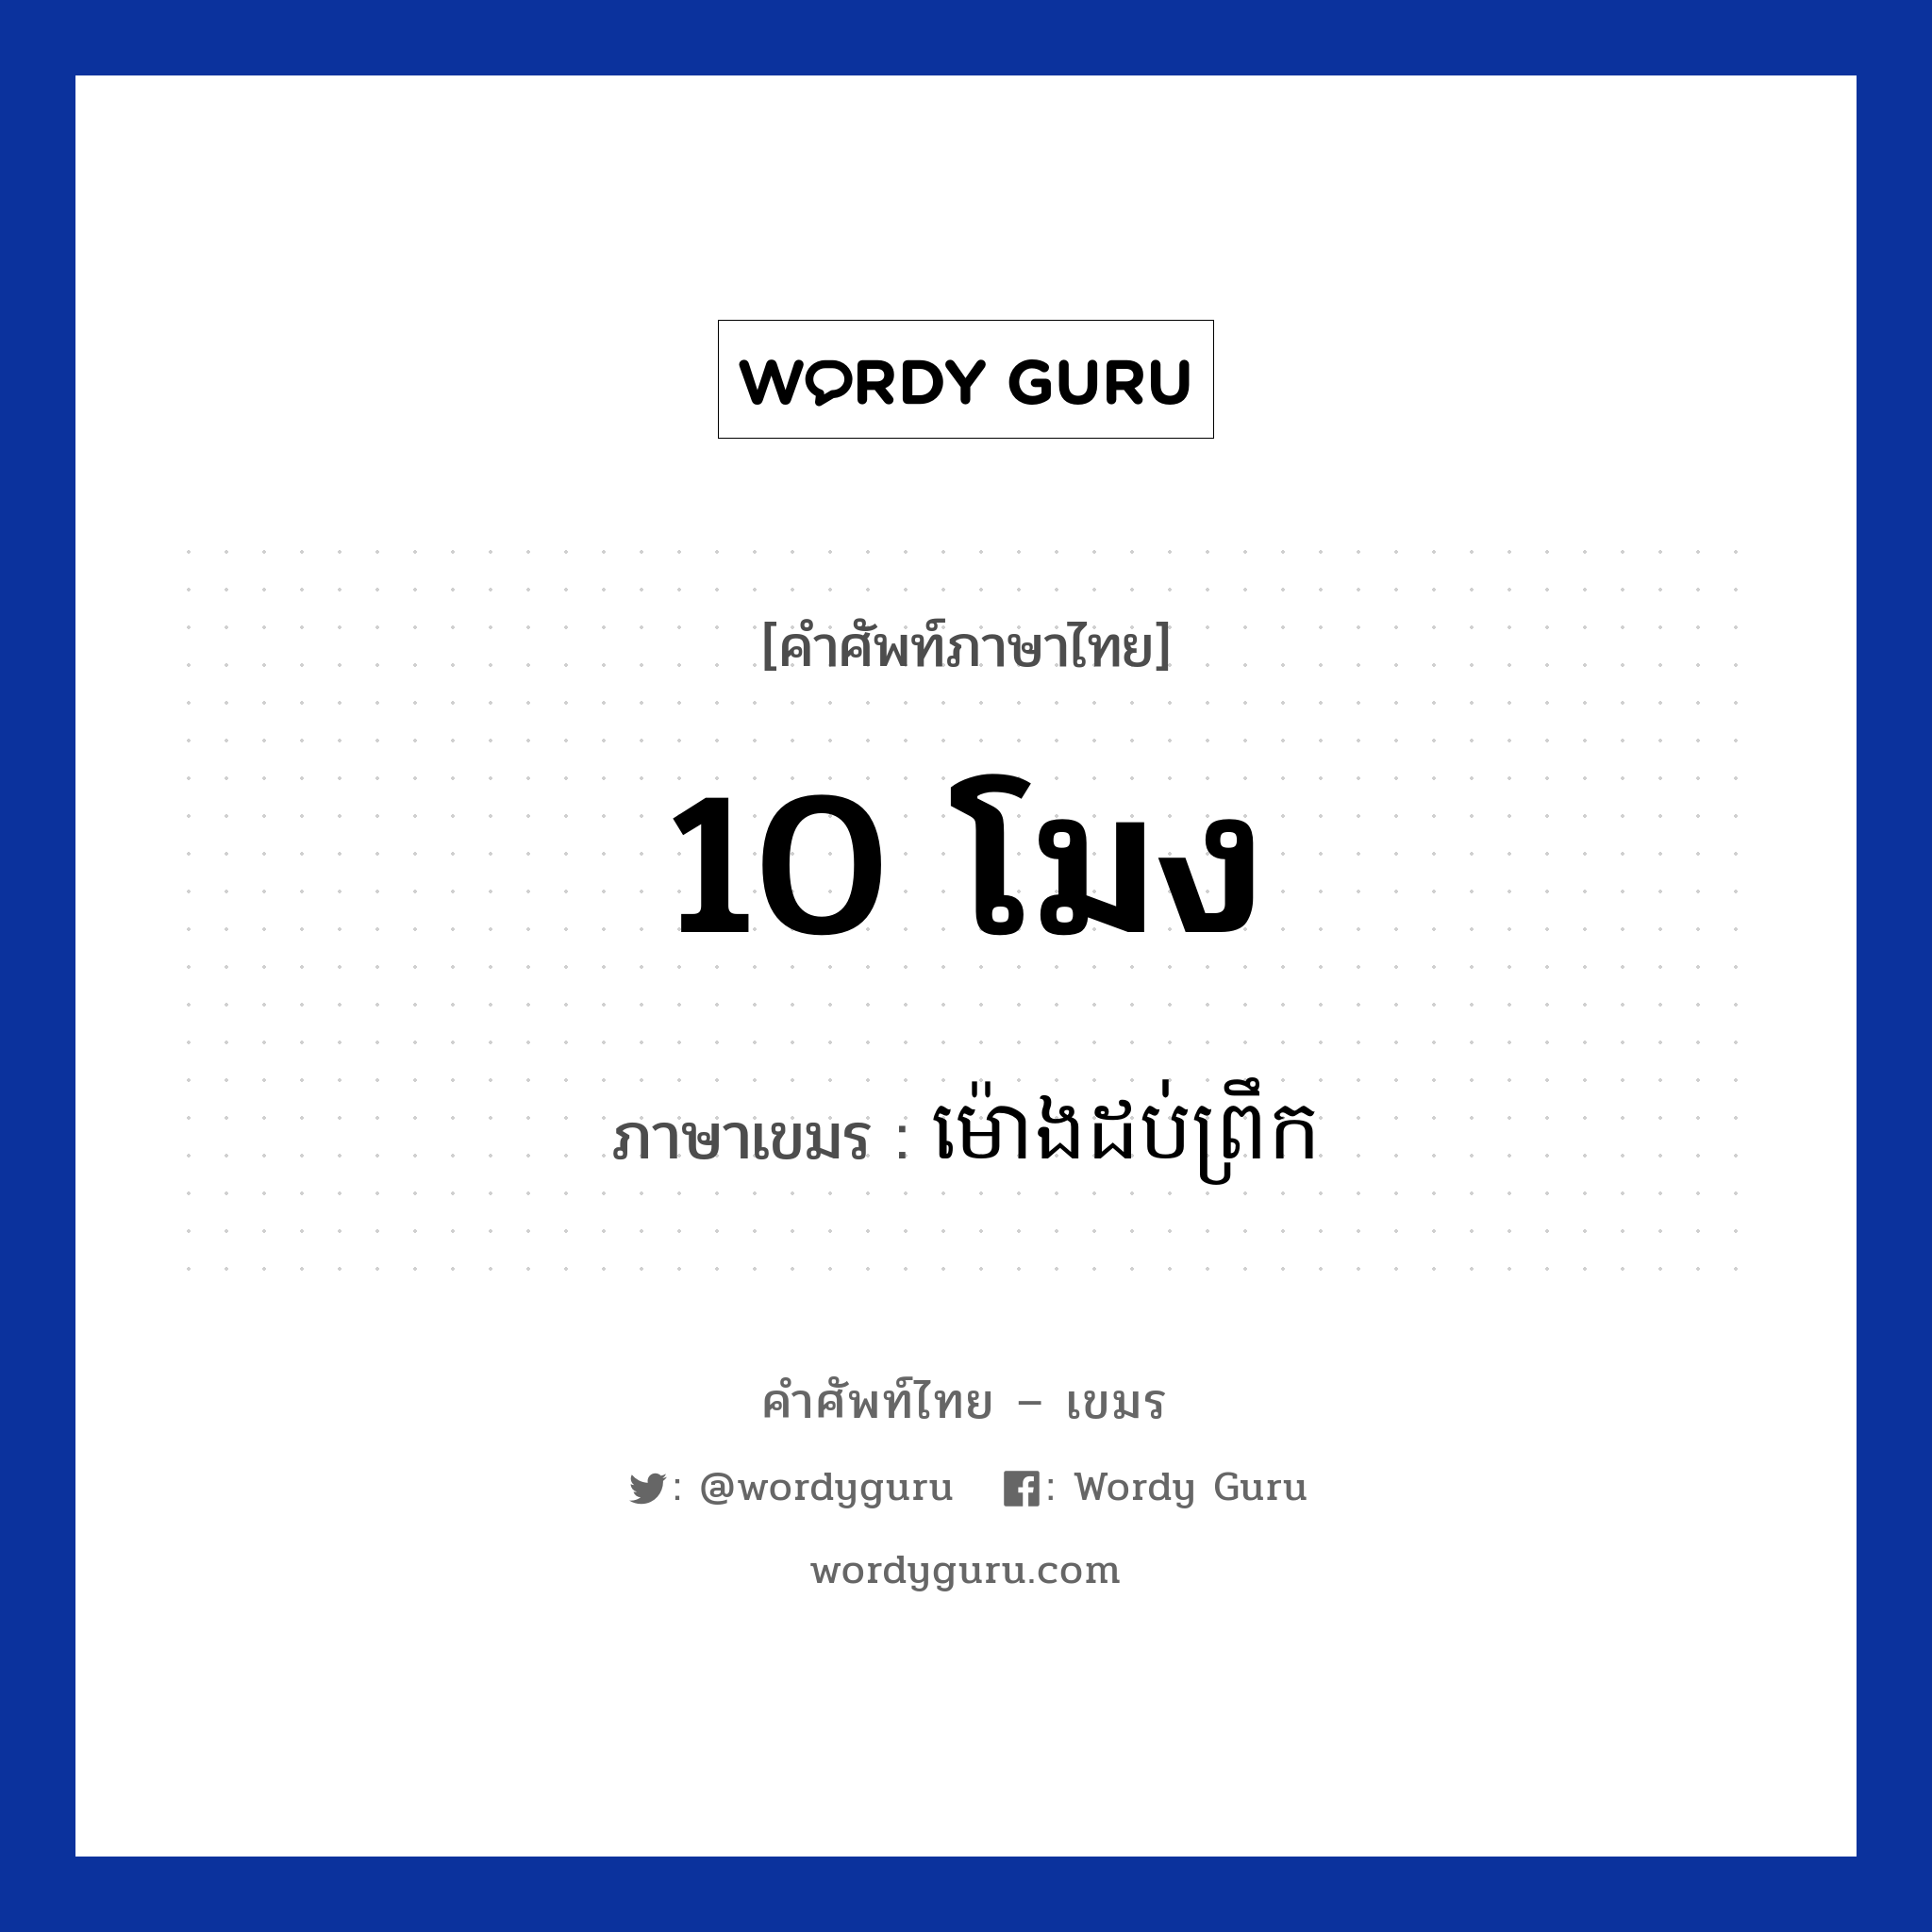 ម៉ោងដប់ព្រឹក ภาษาไทย?, คำศัพท์ภาษาไทย - เขมร ម៉ោងដប់ព្រឹក ภาษาเขมร 10 โมง หมวด เวลา Mong dobpreok หมวด เวลา